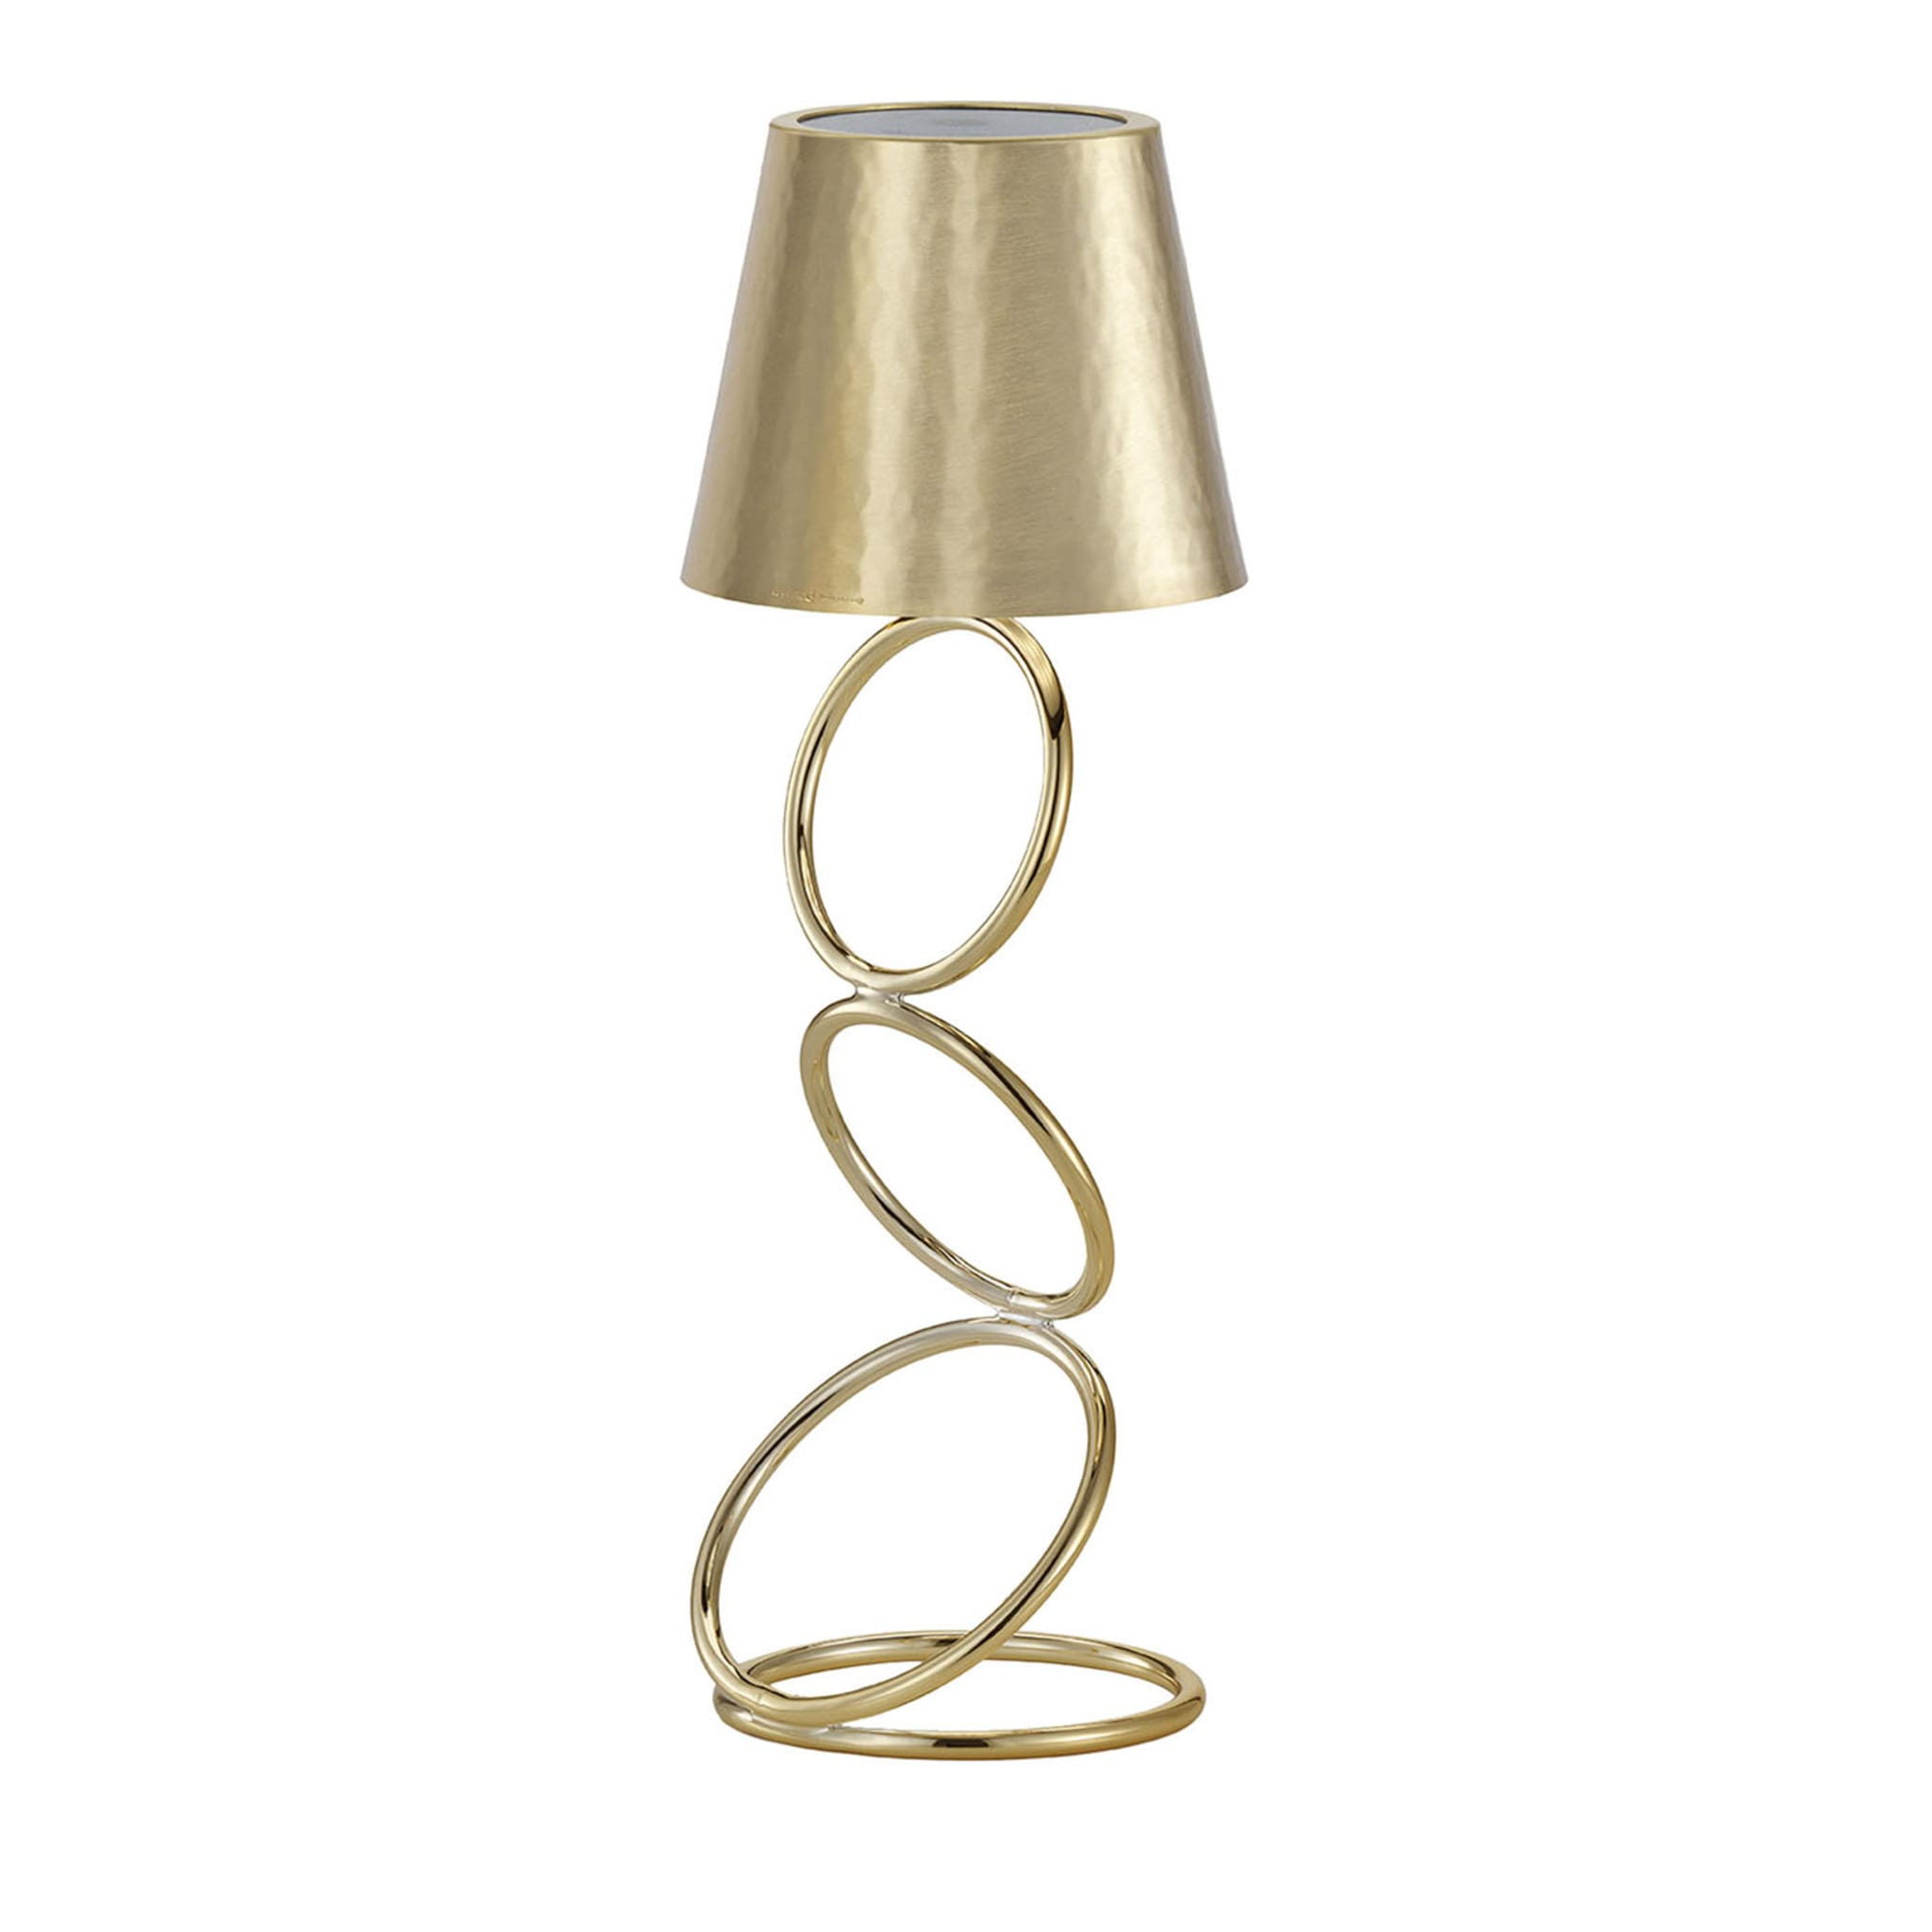 Golden Lamp #4 by Itamar Harari - Main view